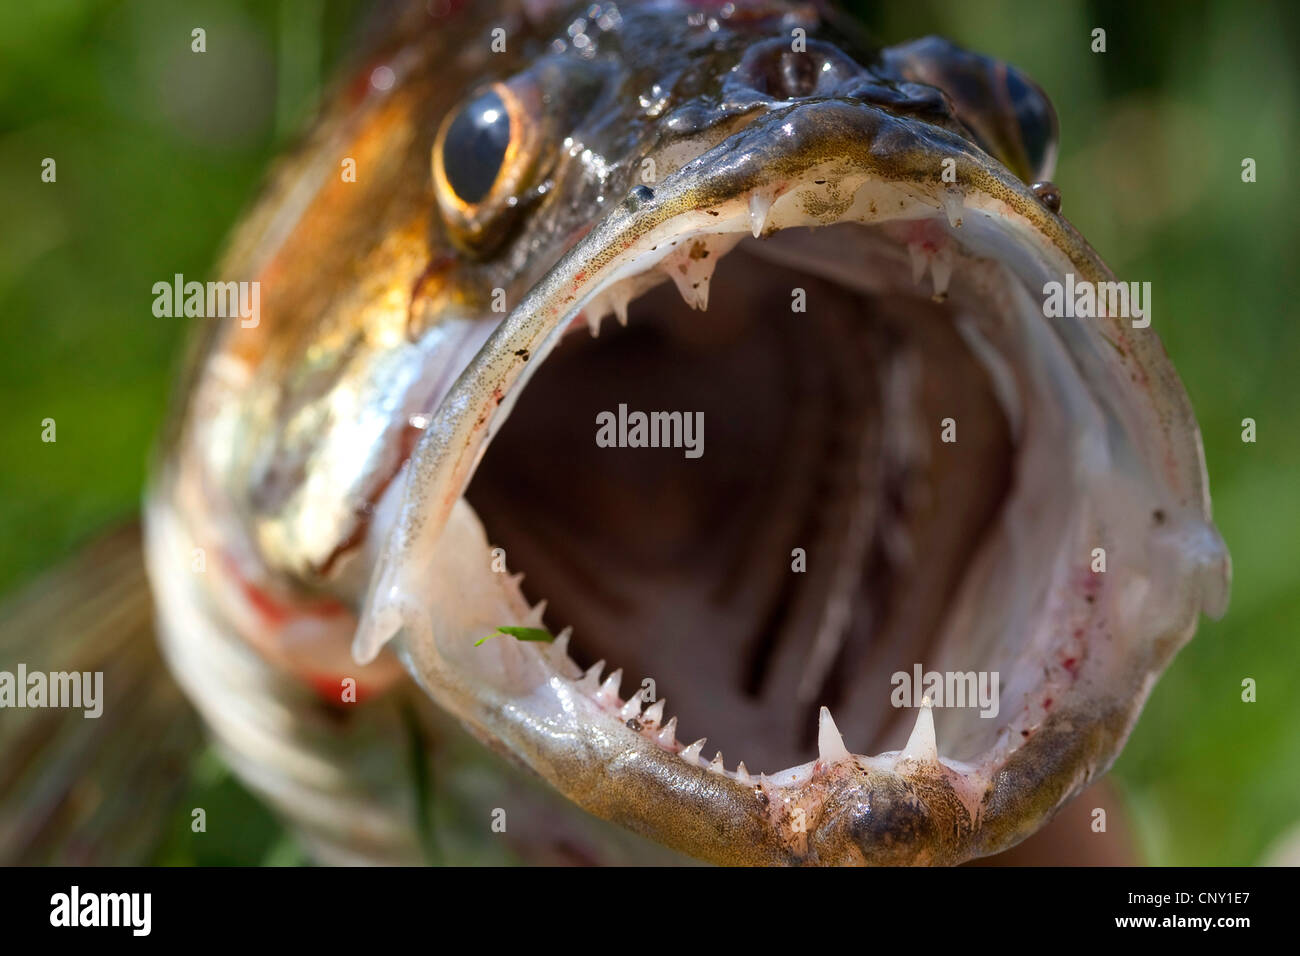 pike-perch, zander (Stizostedion lucioperca, Sander lucioperca), open mouth of a fished zander Stock Photo